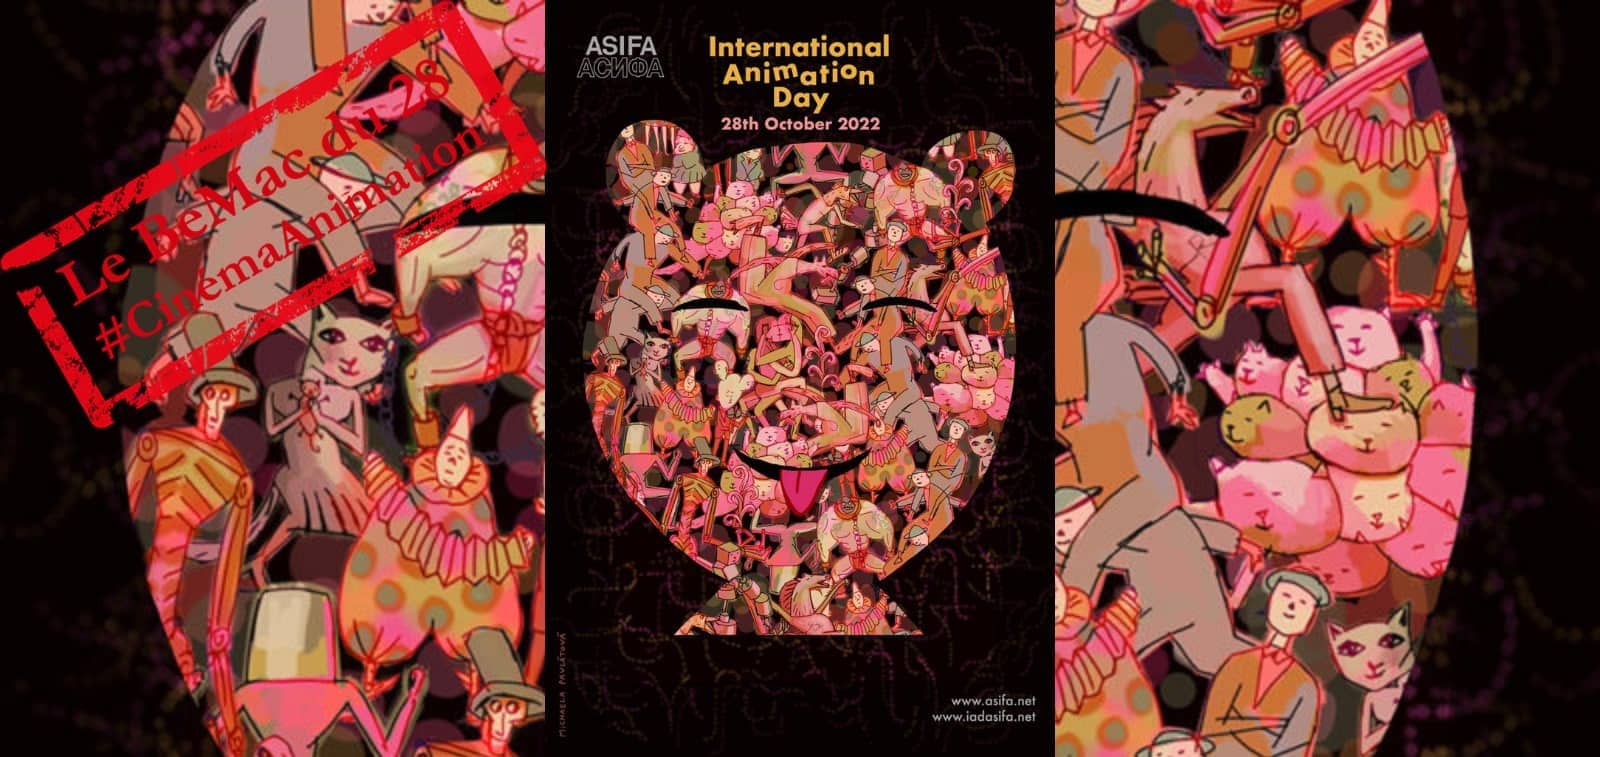 Affiche ASIFA 2022 de la Journée mondiale du cinéma d’animation